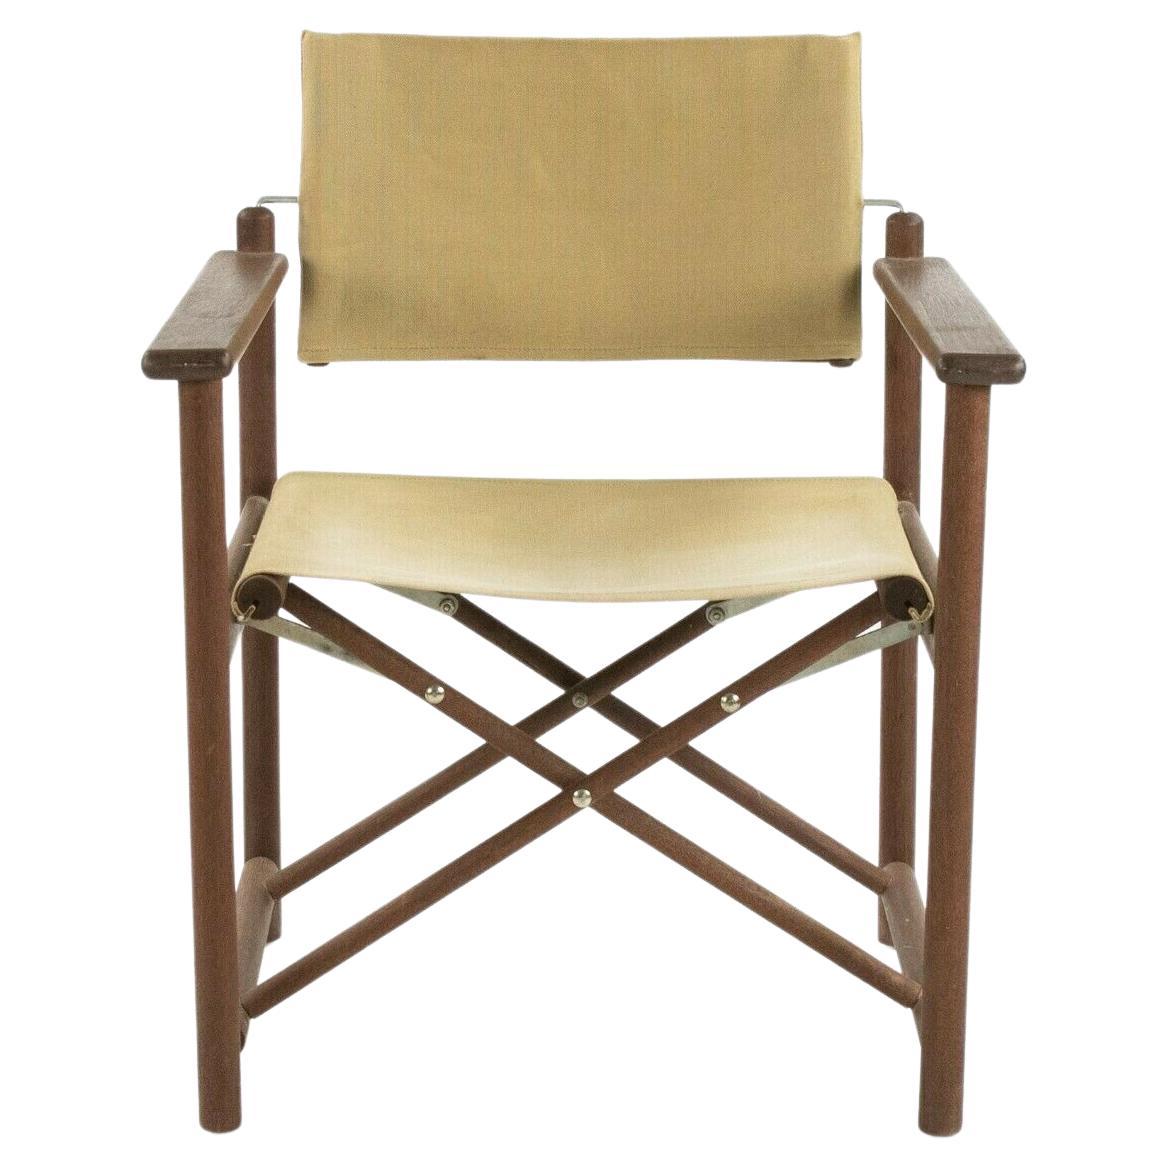 1960s Danish Modern Walnut and Canvas Folding Campaign Chair (Chaise de campagne pliante en noyer et toile)